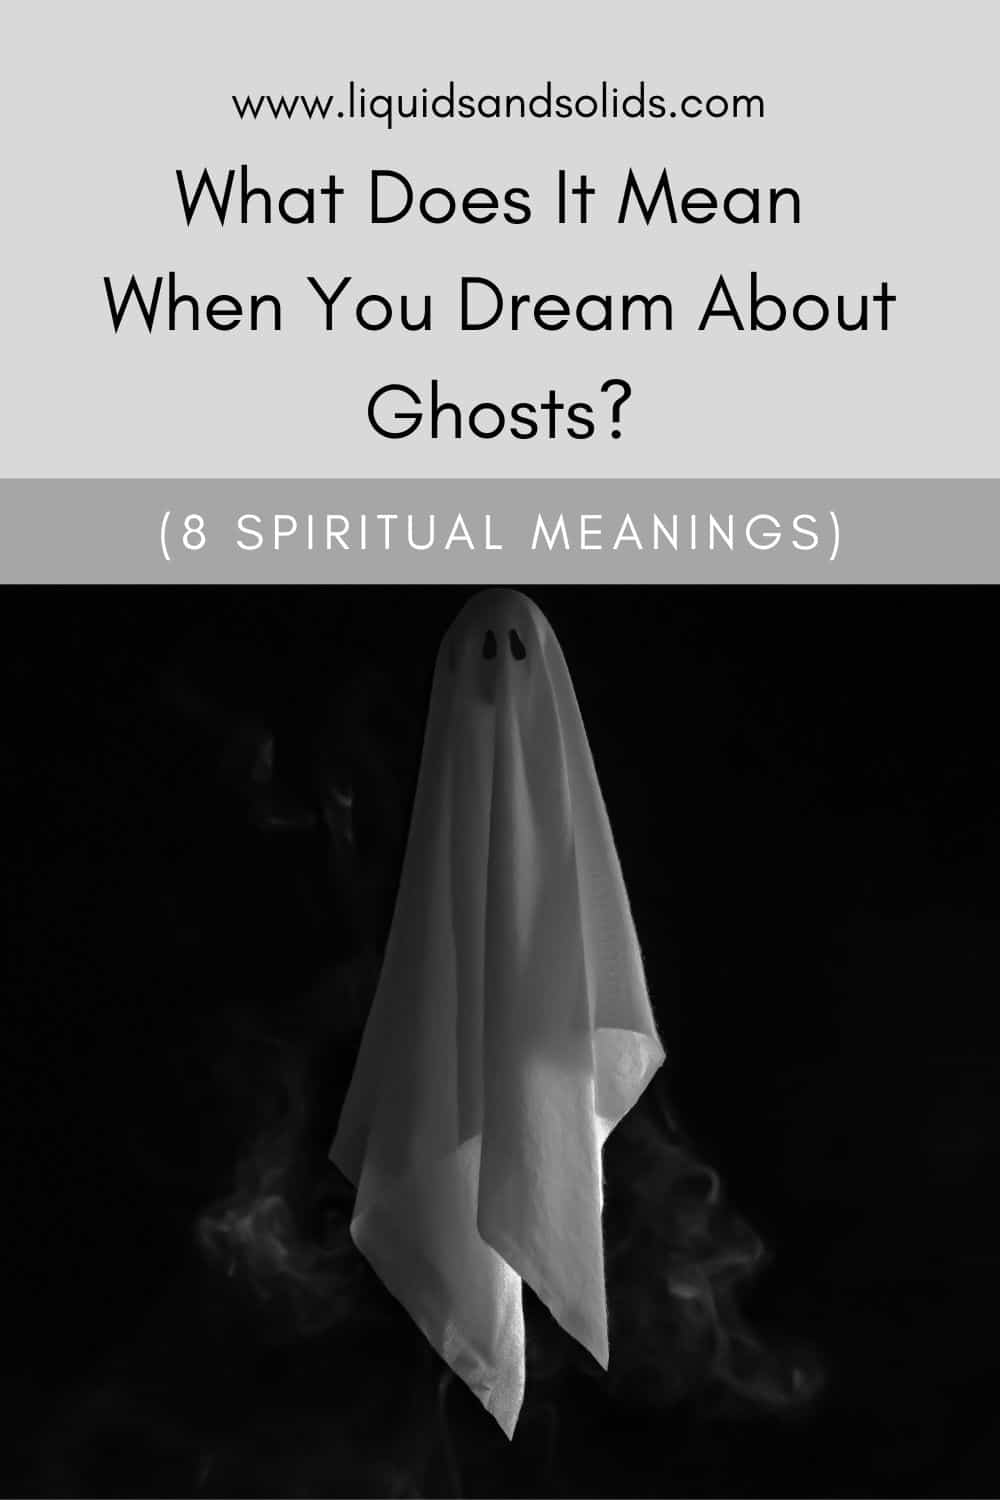  Ce que signifie rêver de fantômes (8 significations spirituelles)